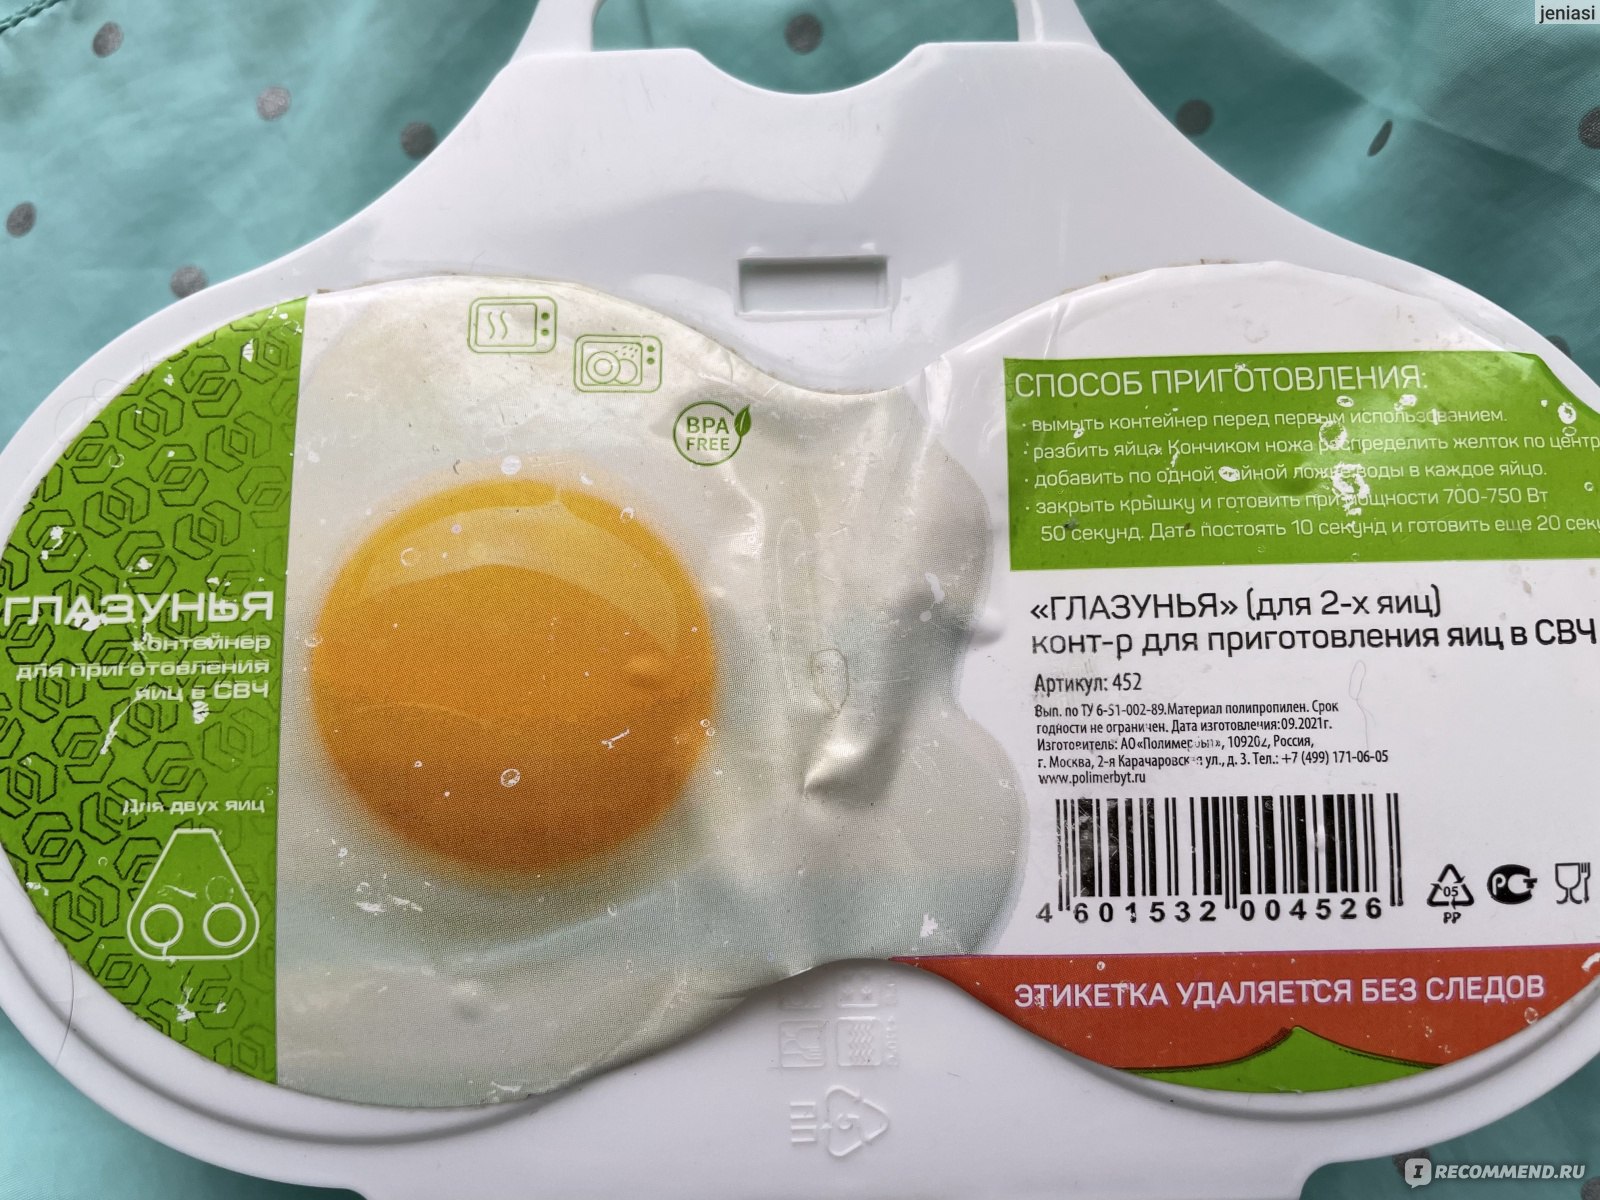 Можно варить яйца в микроволновке. Контейнер для приготовления яиц СВЧ глазунья Полимербыт 4345200. Контейнер для приготовления яиц в СВЧ. Яйца в микроволновке в контейнере. Форма для яичницы в СВЧ.